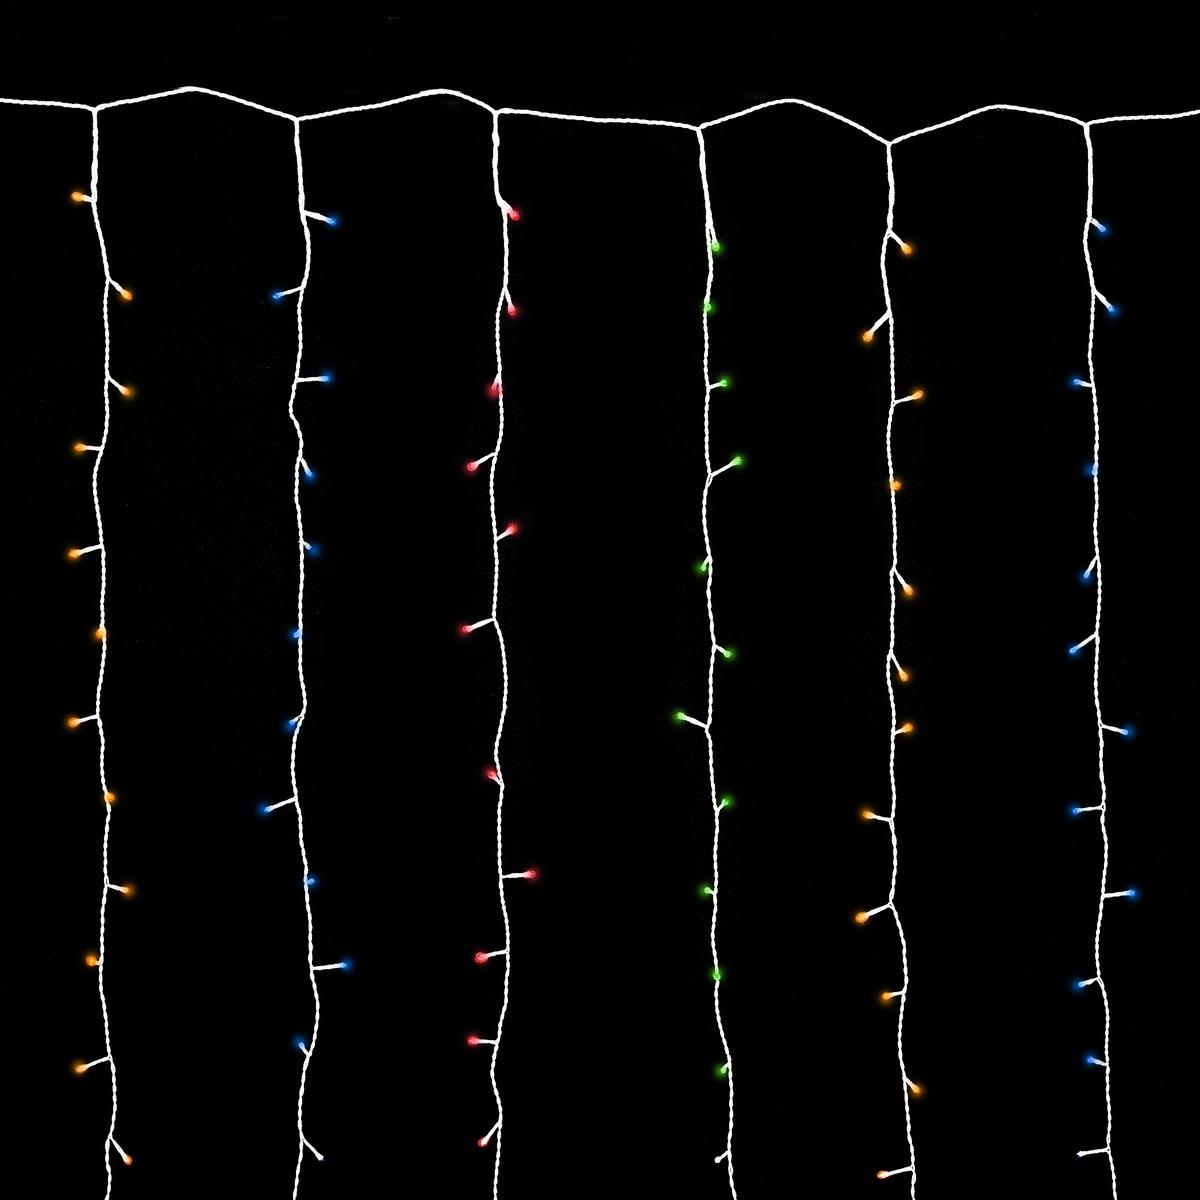 Guirlande électrique rideau 180 led lucioles 8 fonctions 24 V - 1,2 x 2 mètres - Multicolore